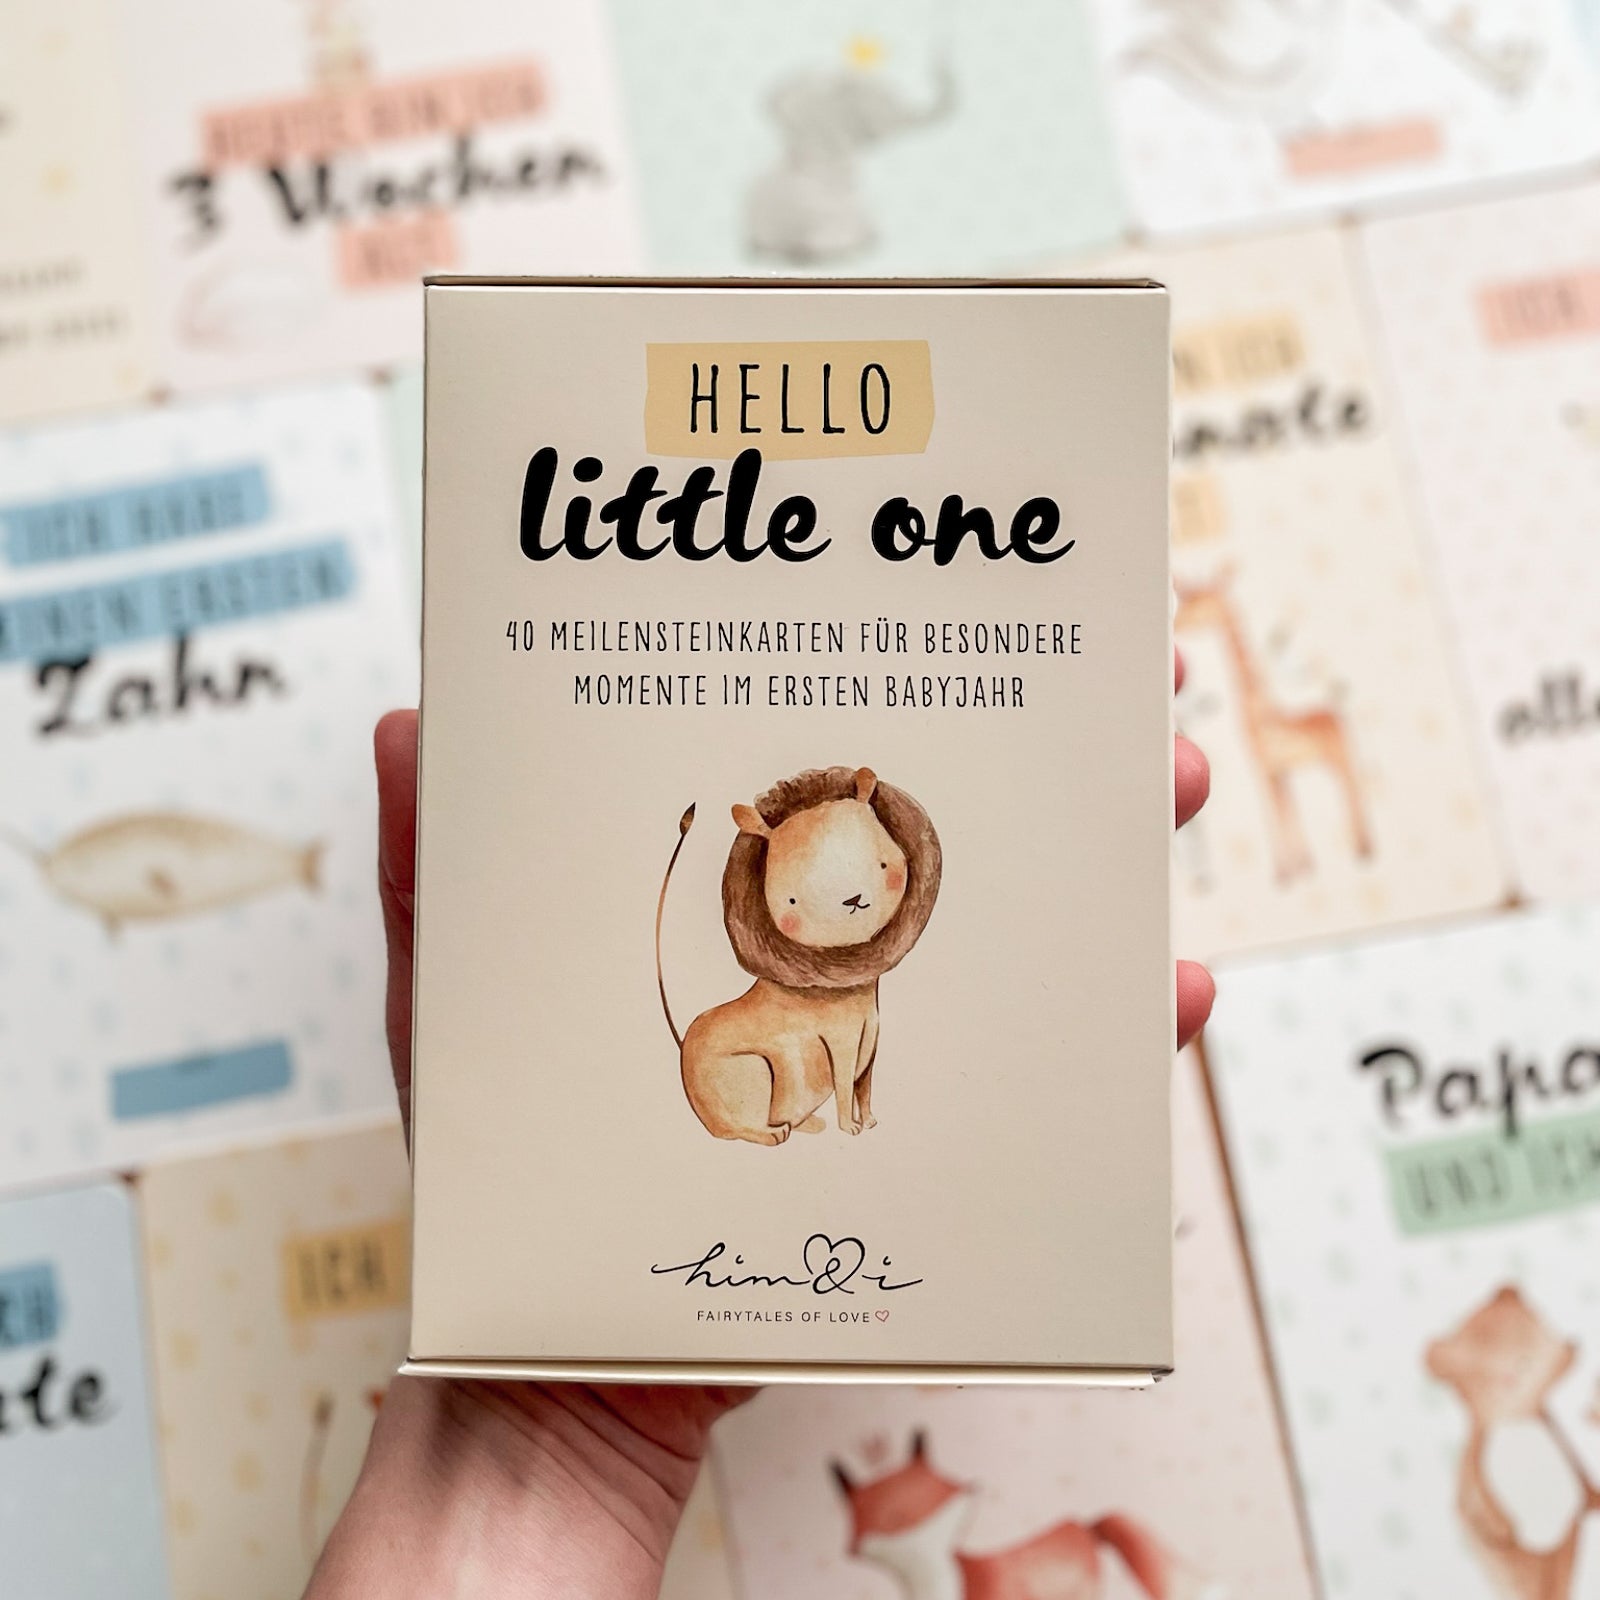 Baby Meilensteinkarten - Hello little one!